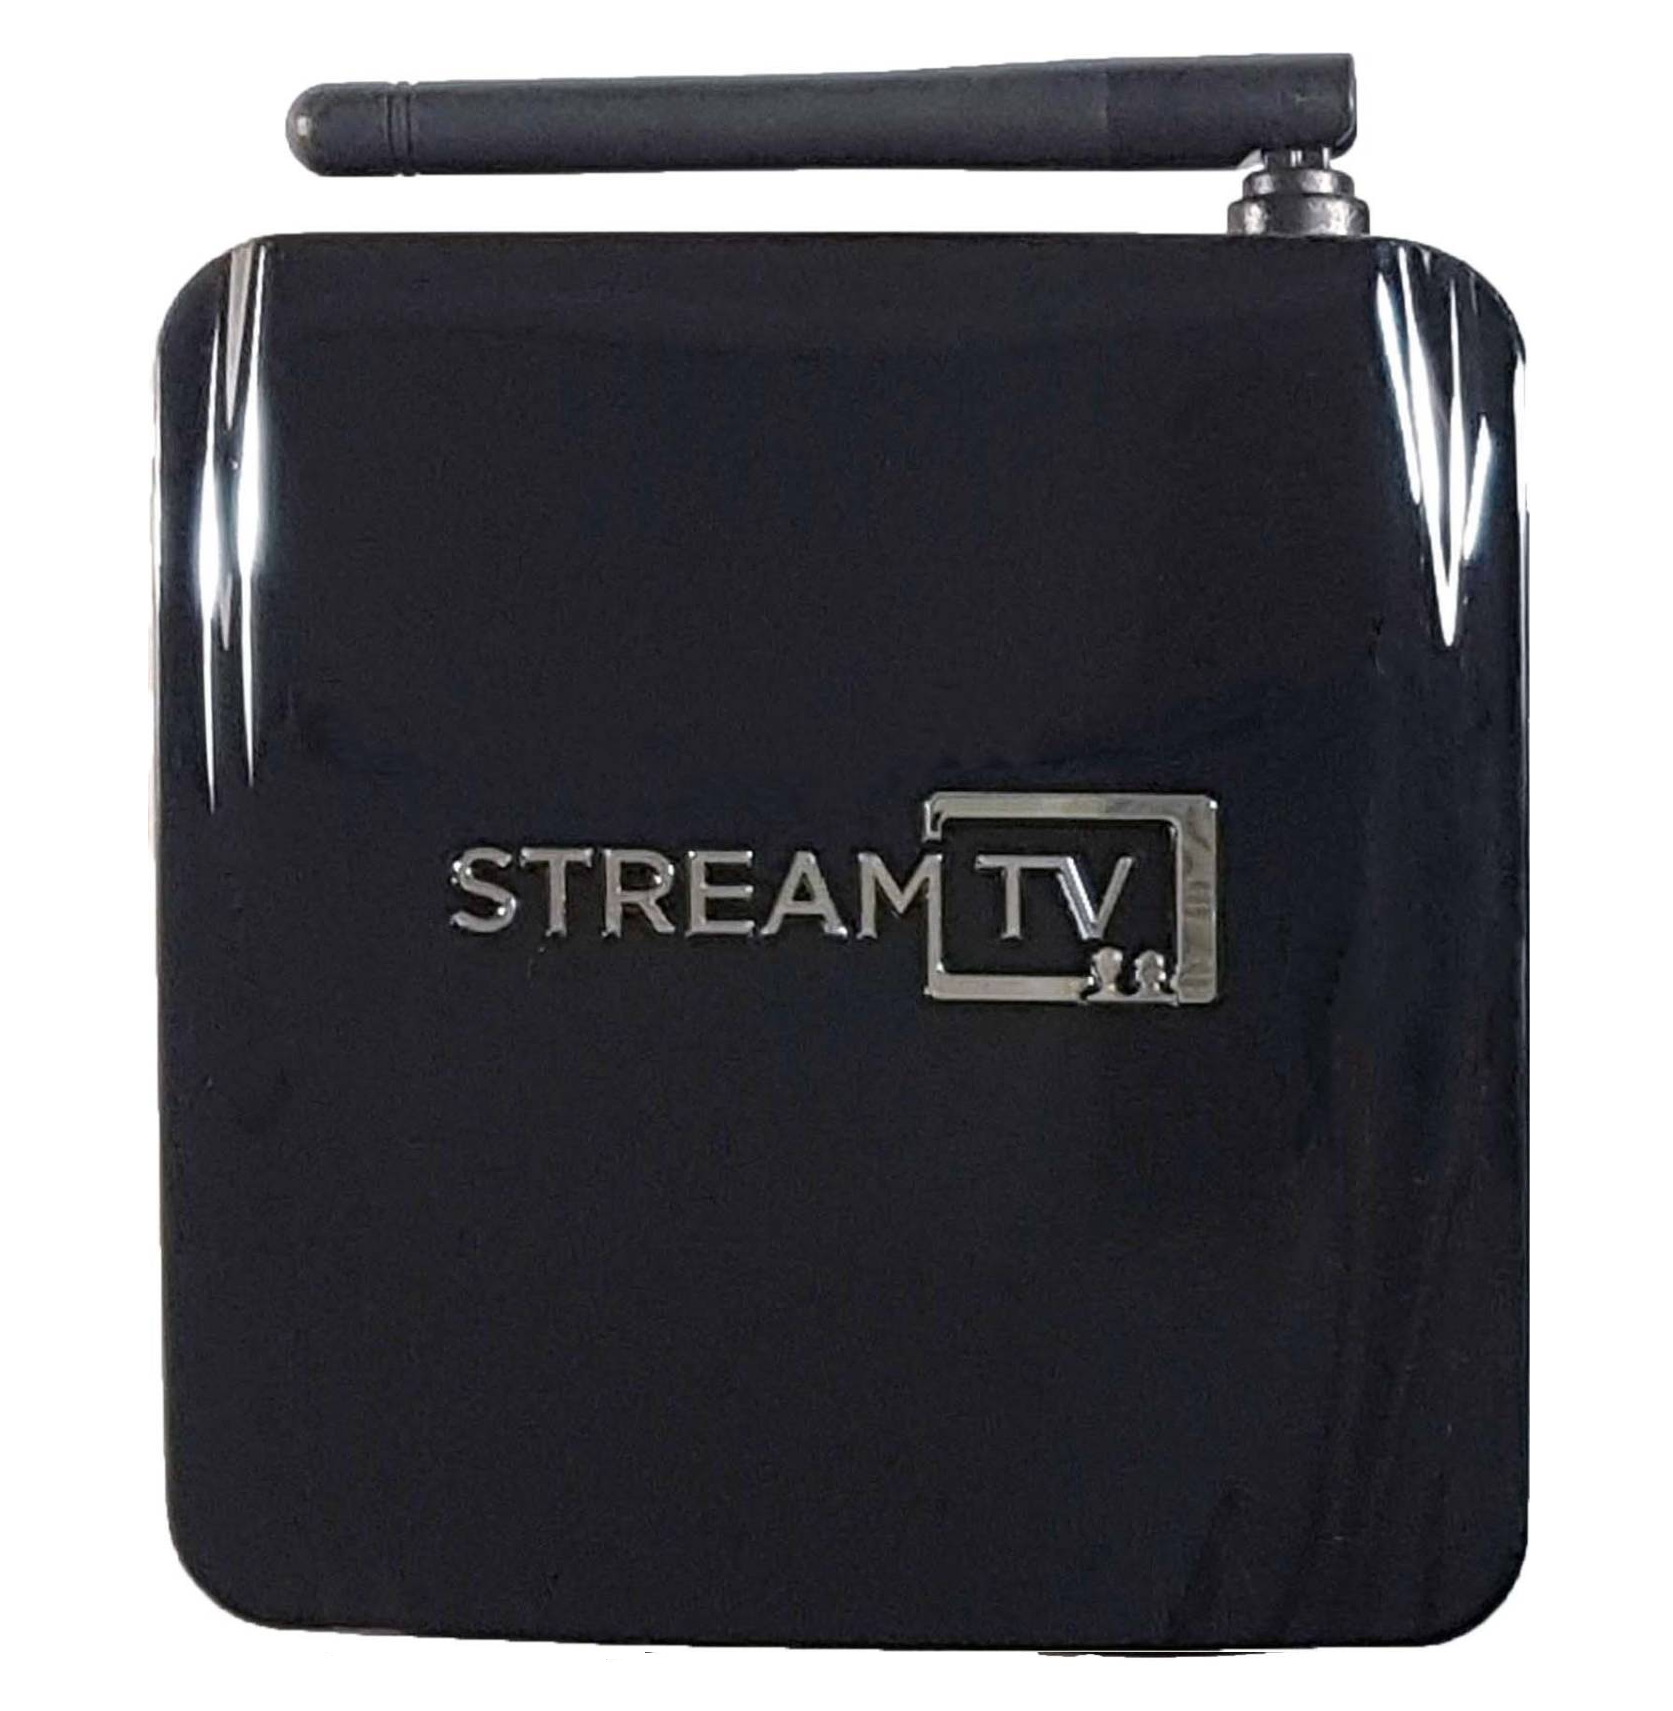 StreamTV Refub